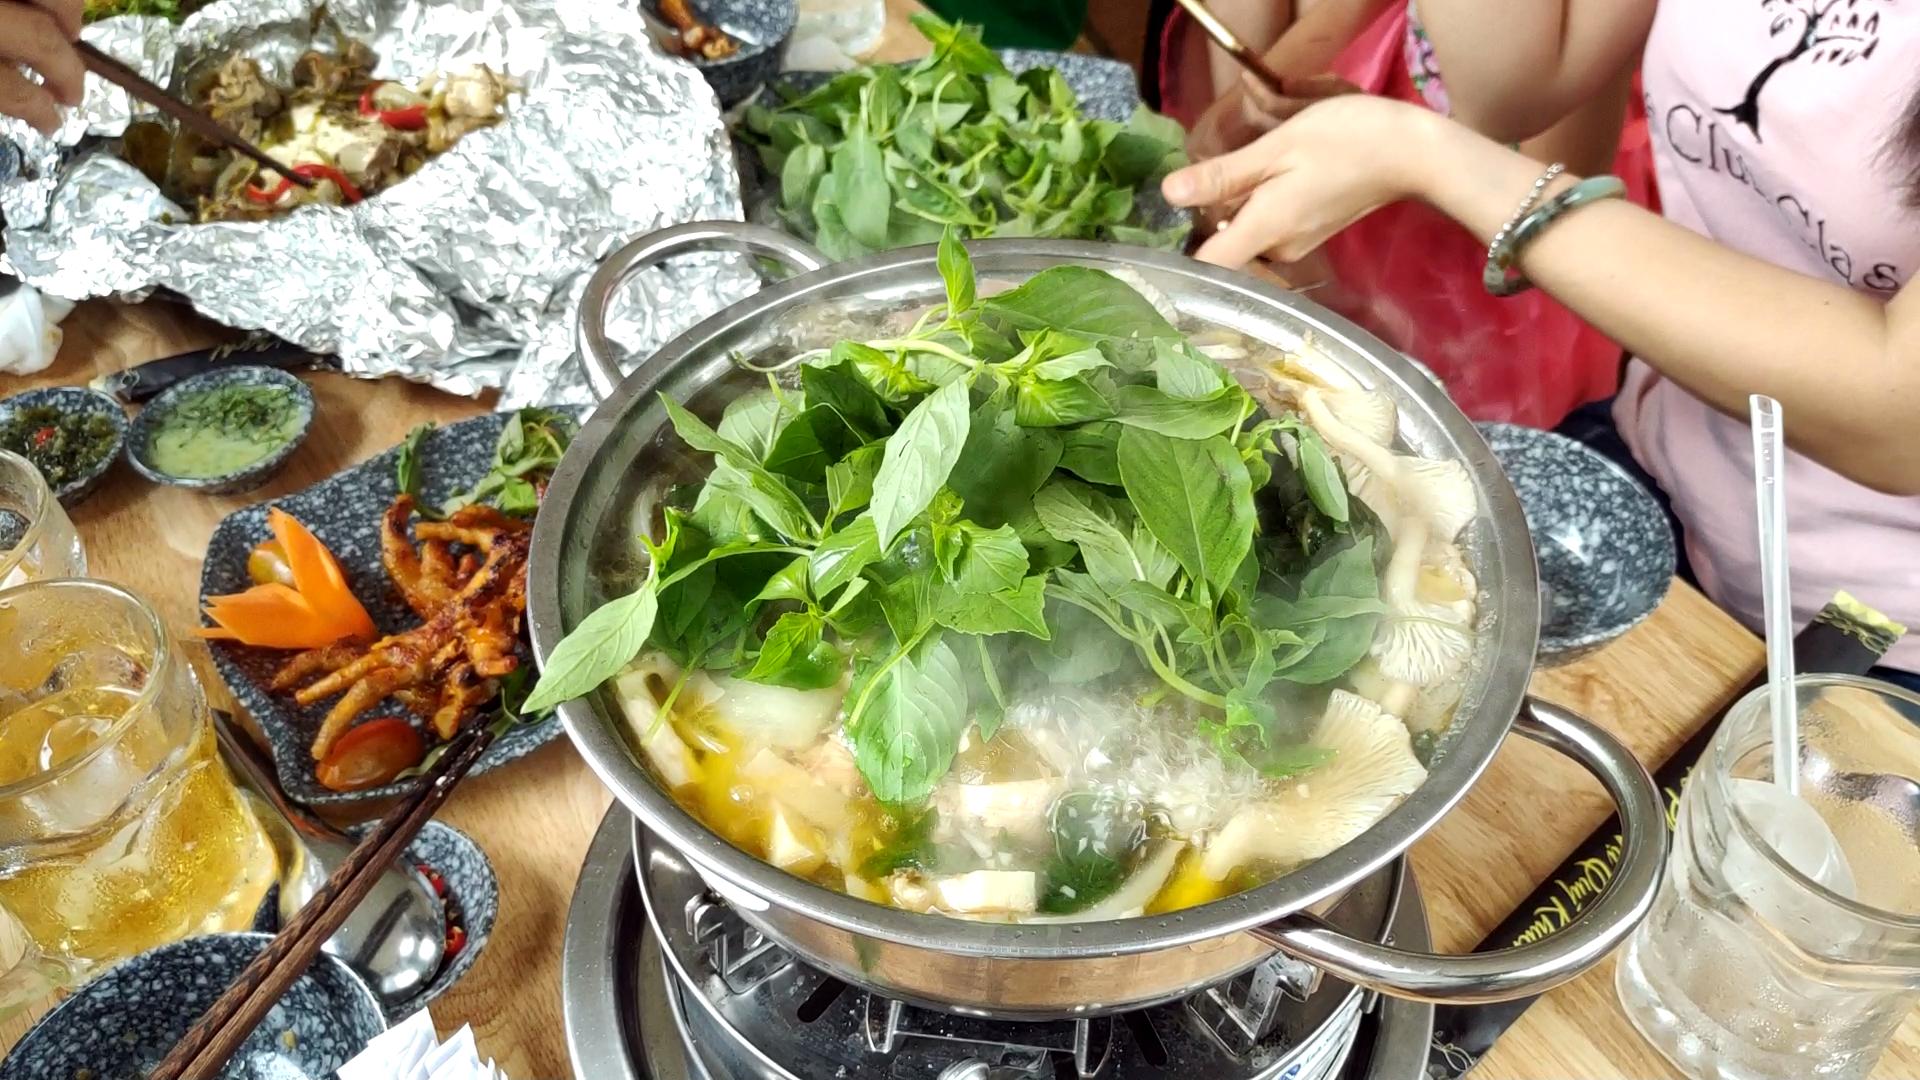 Vietnamese chicken dishes